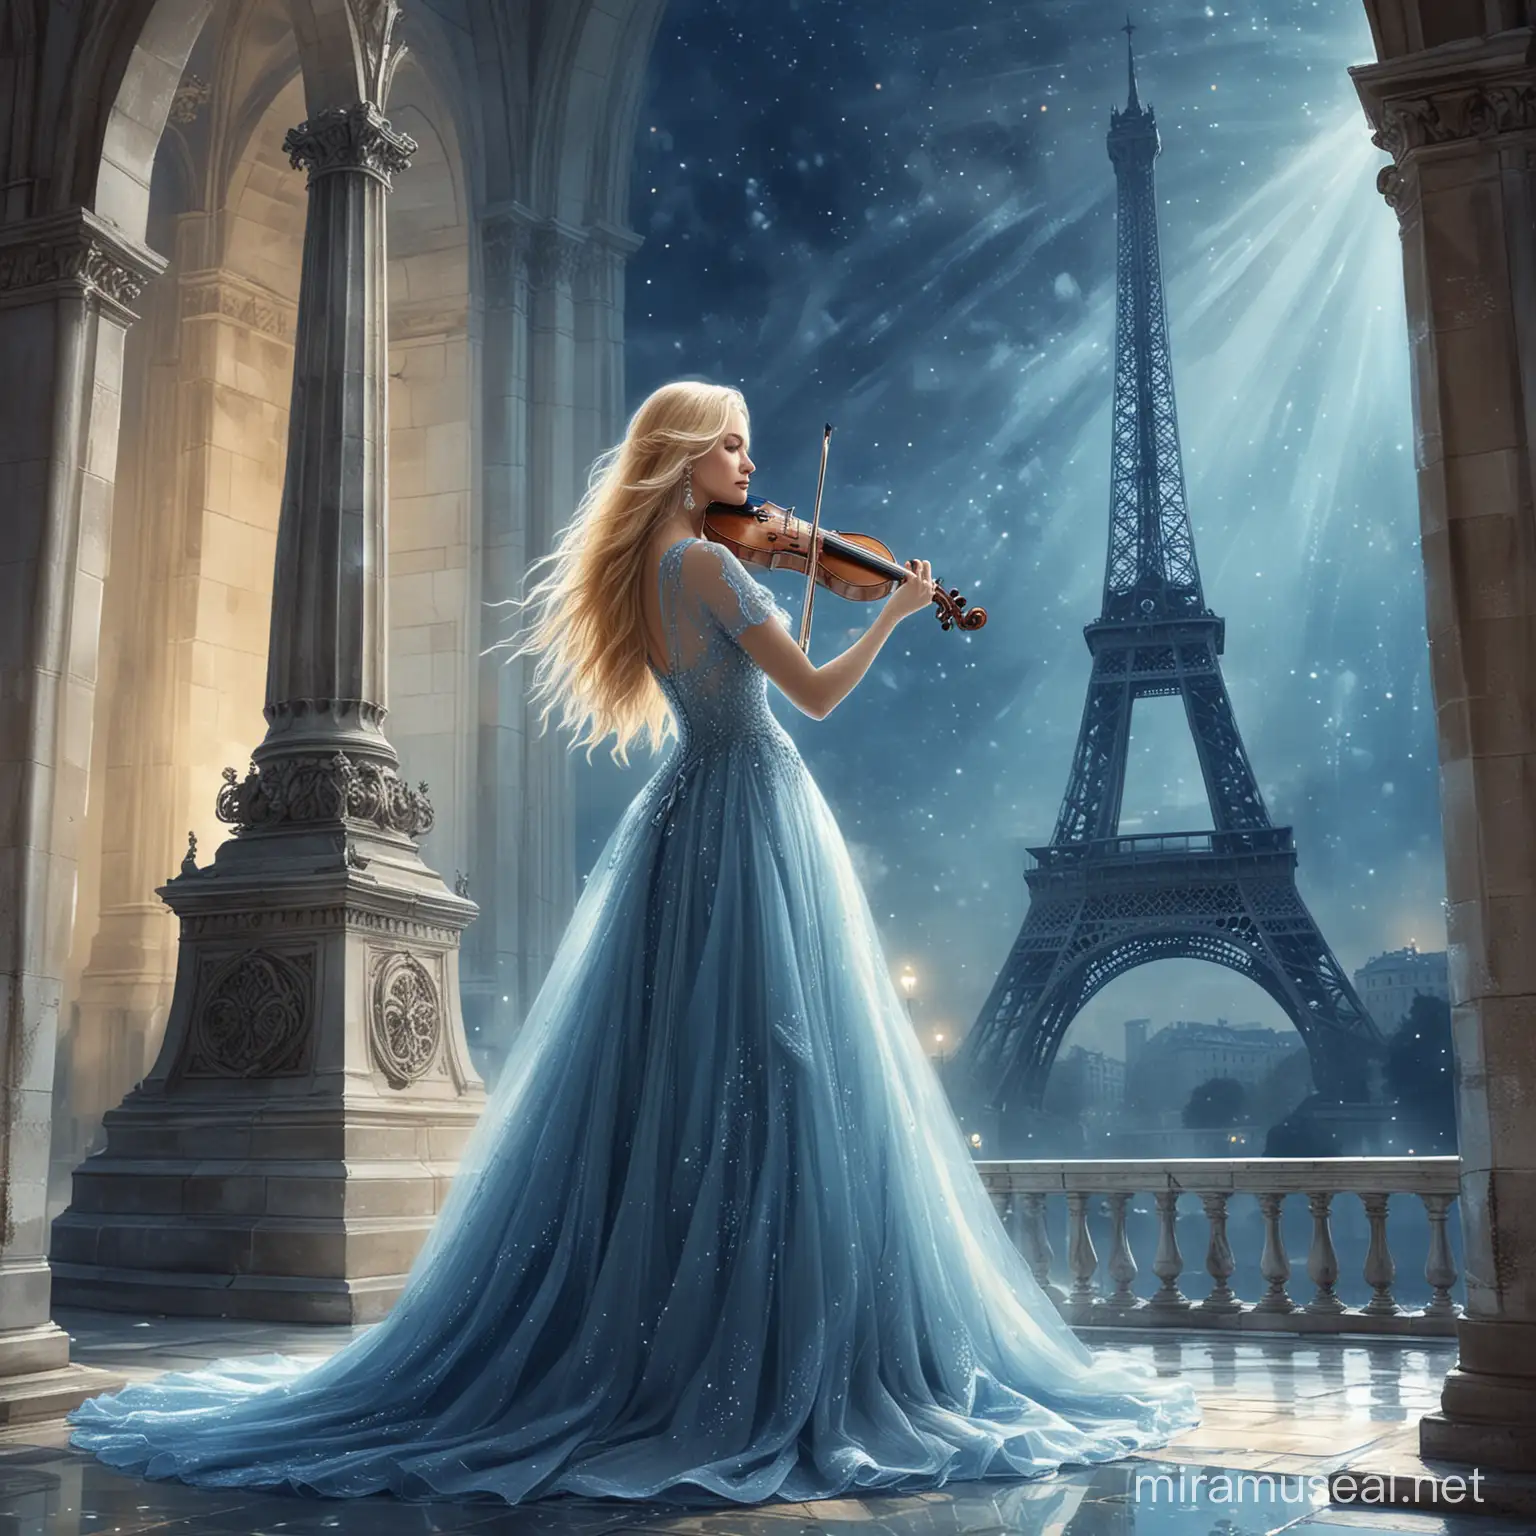 Elegant Bride Playing Violon in Fantasy Eiffel Tower Setting